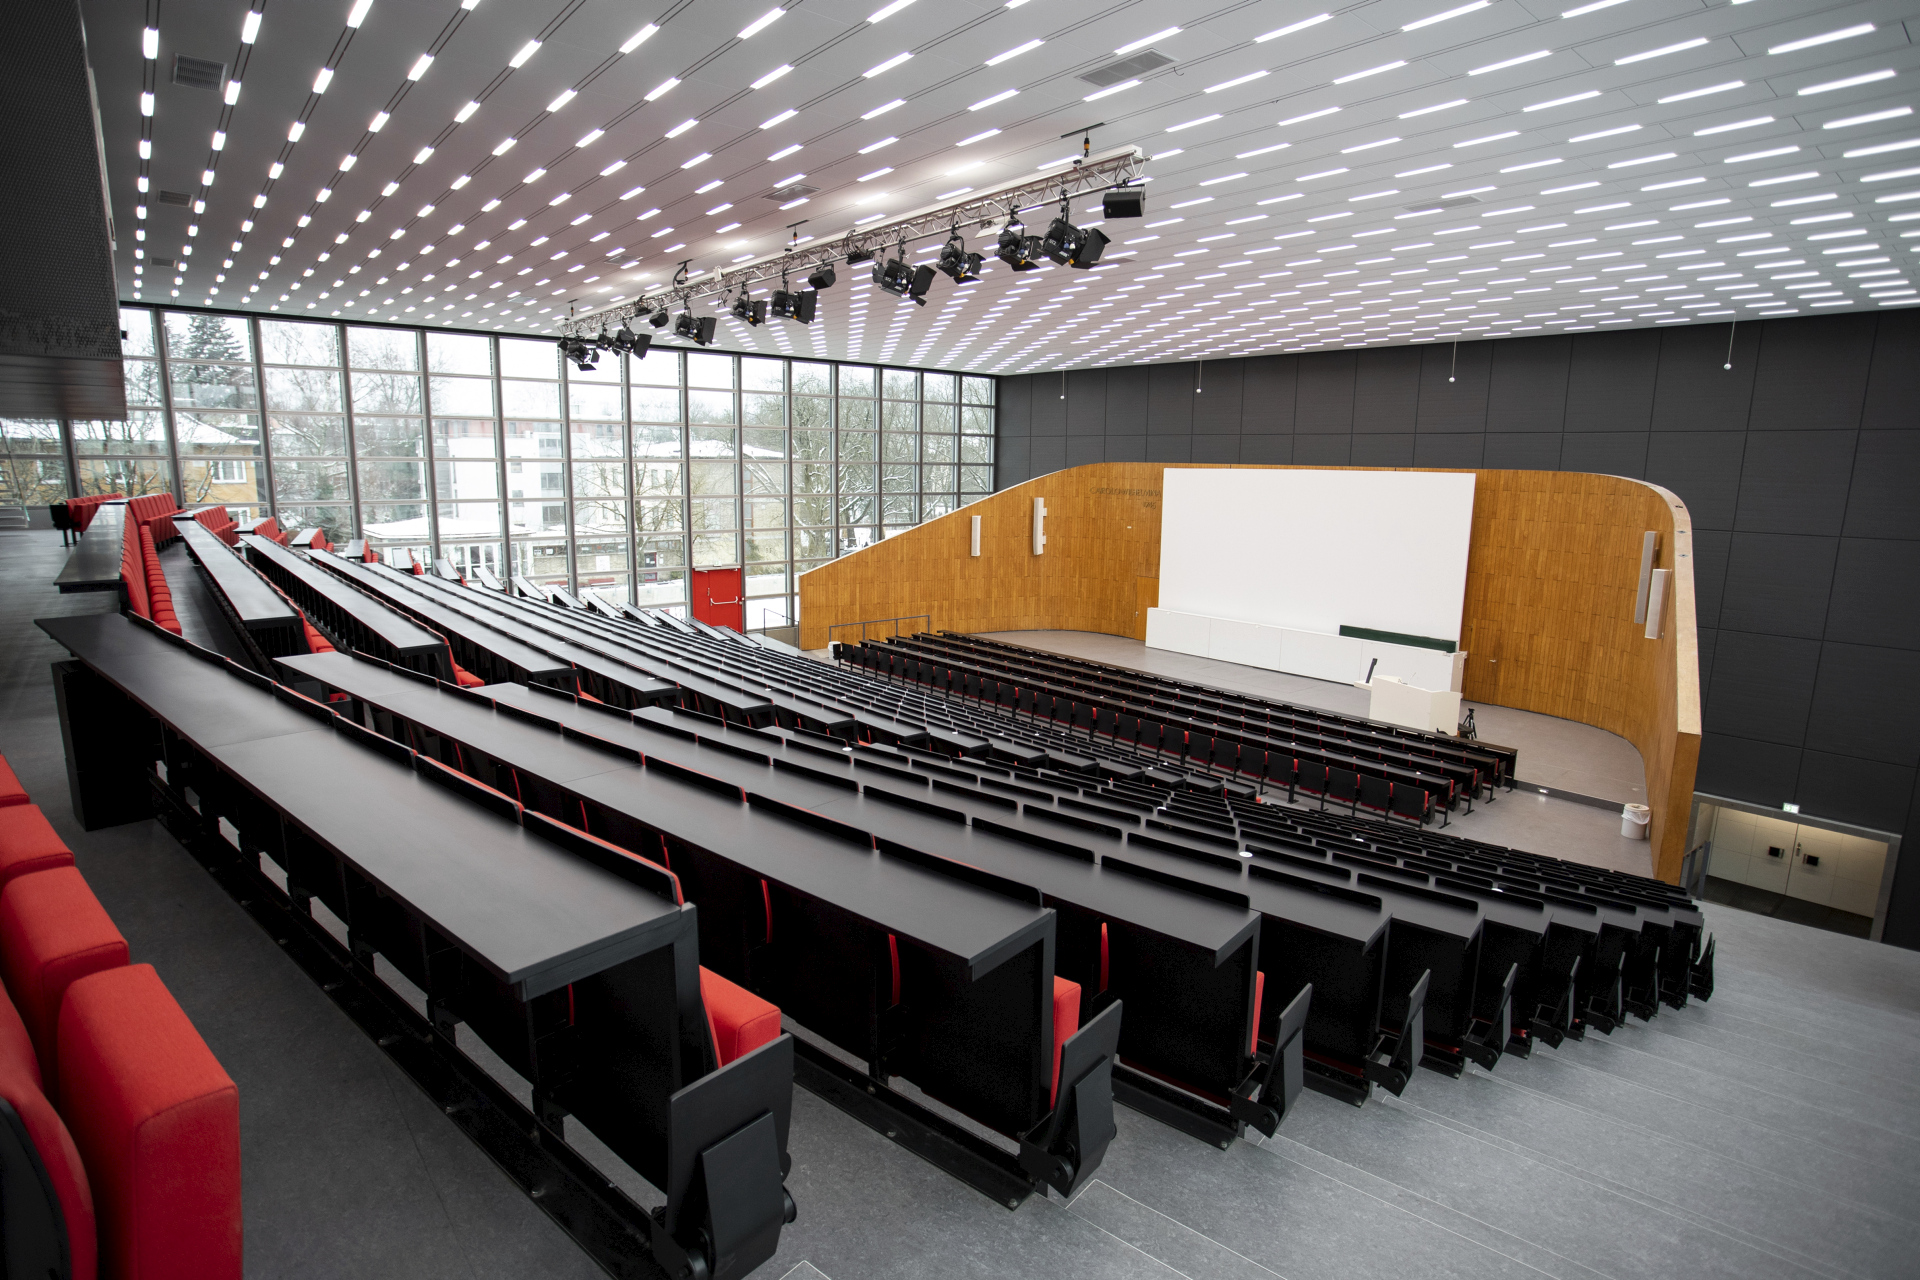 Das Audimax ist der größte Hörsaal der Carolo-Wilhelmina. Bildnachweis: Max Fuhrmann/TU Braunschweig